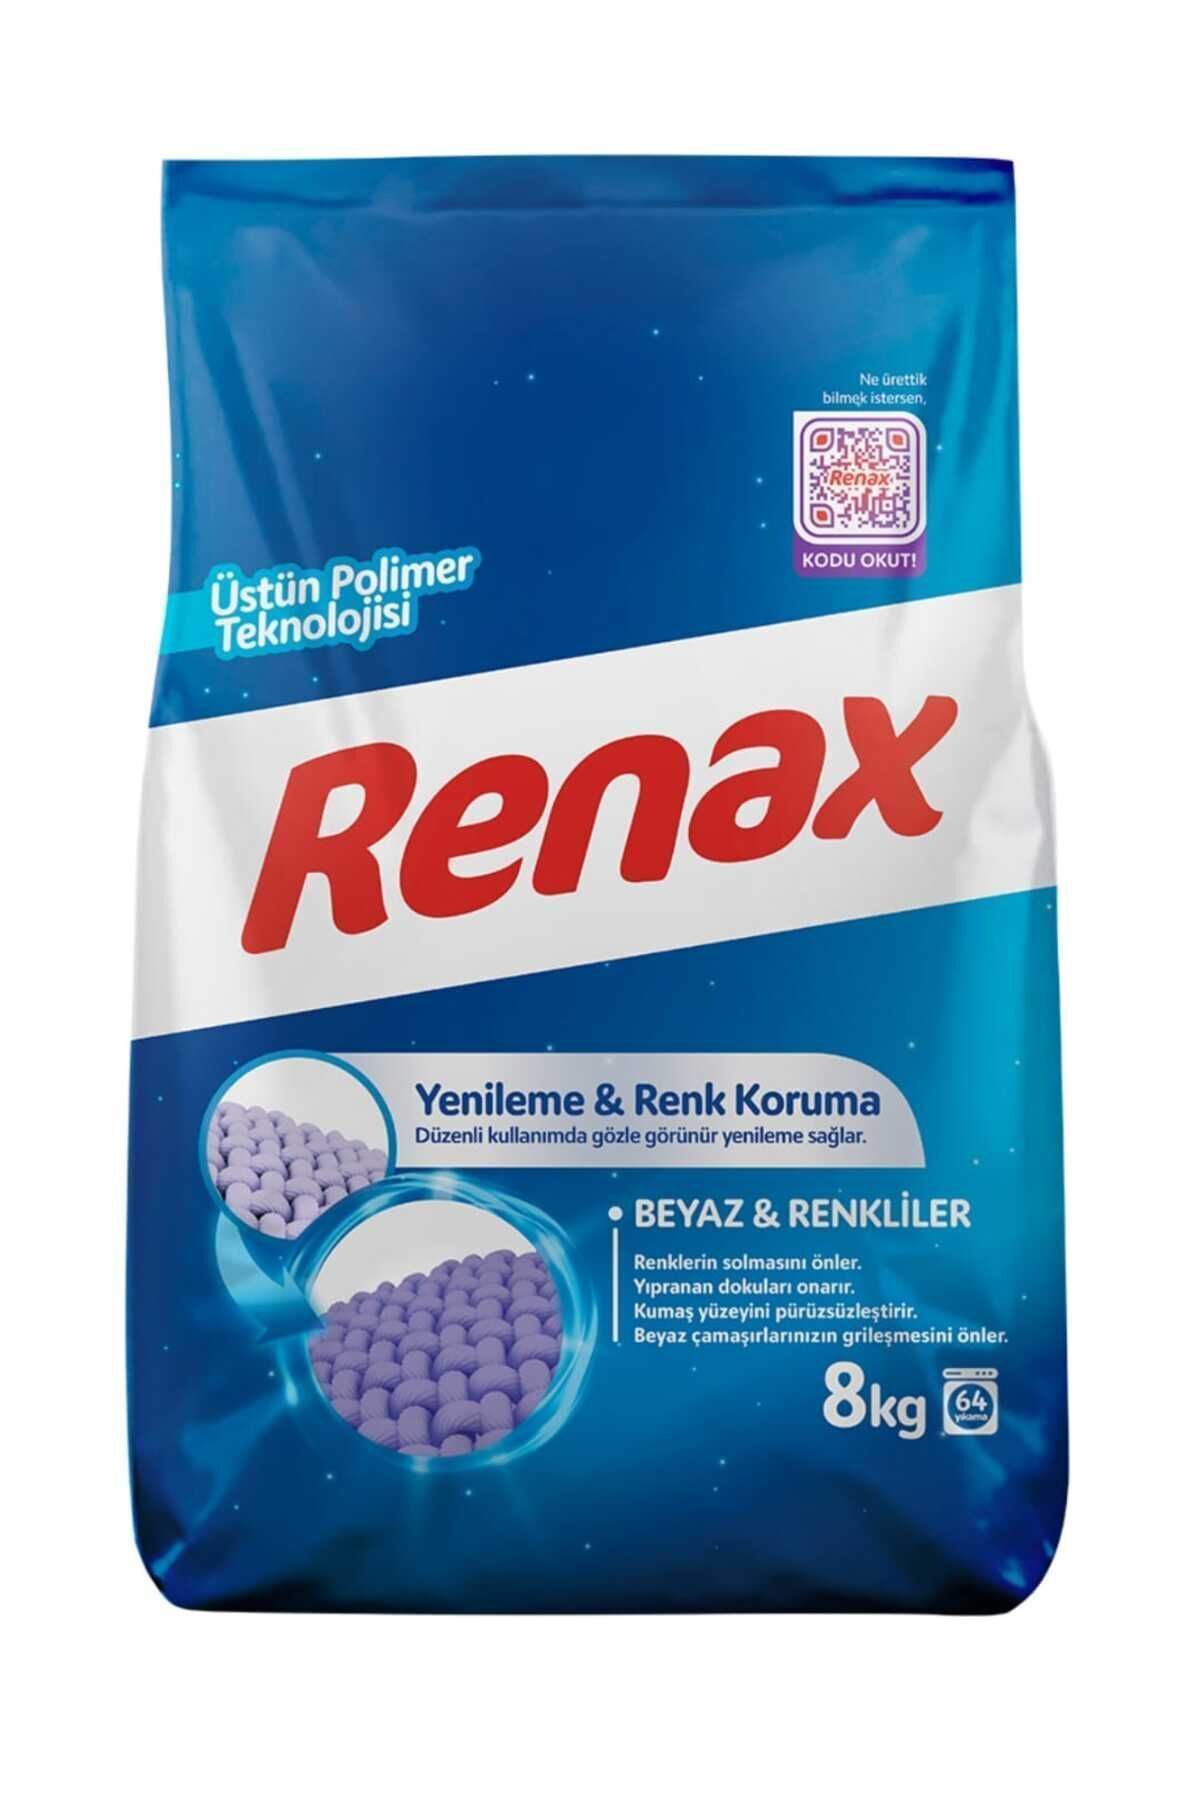 RENAX 8 Kg Renkliler Ve Beyazlar Için Çamaşır Makinası Deterjanı 1 Adet